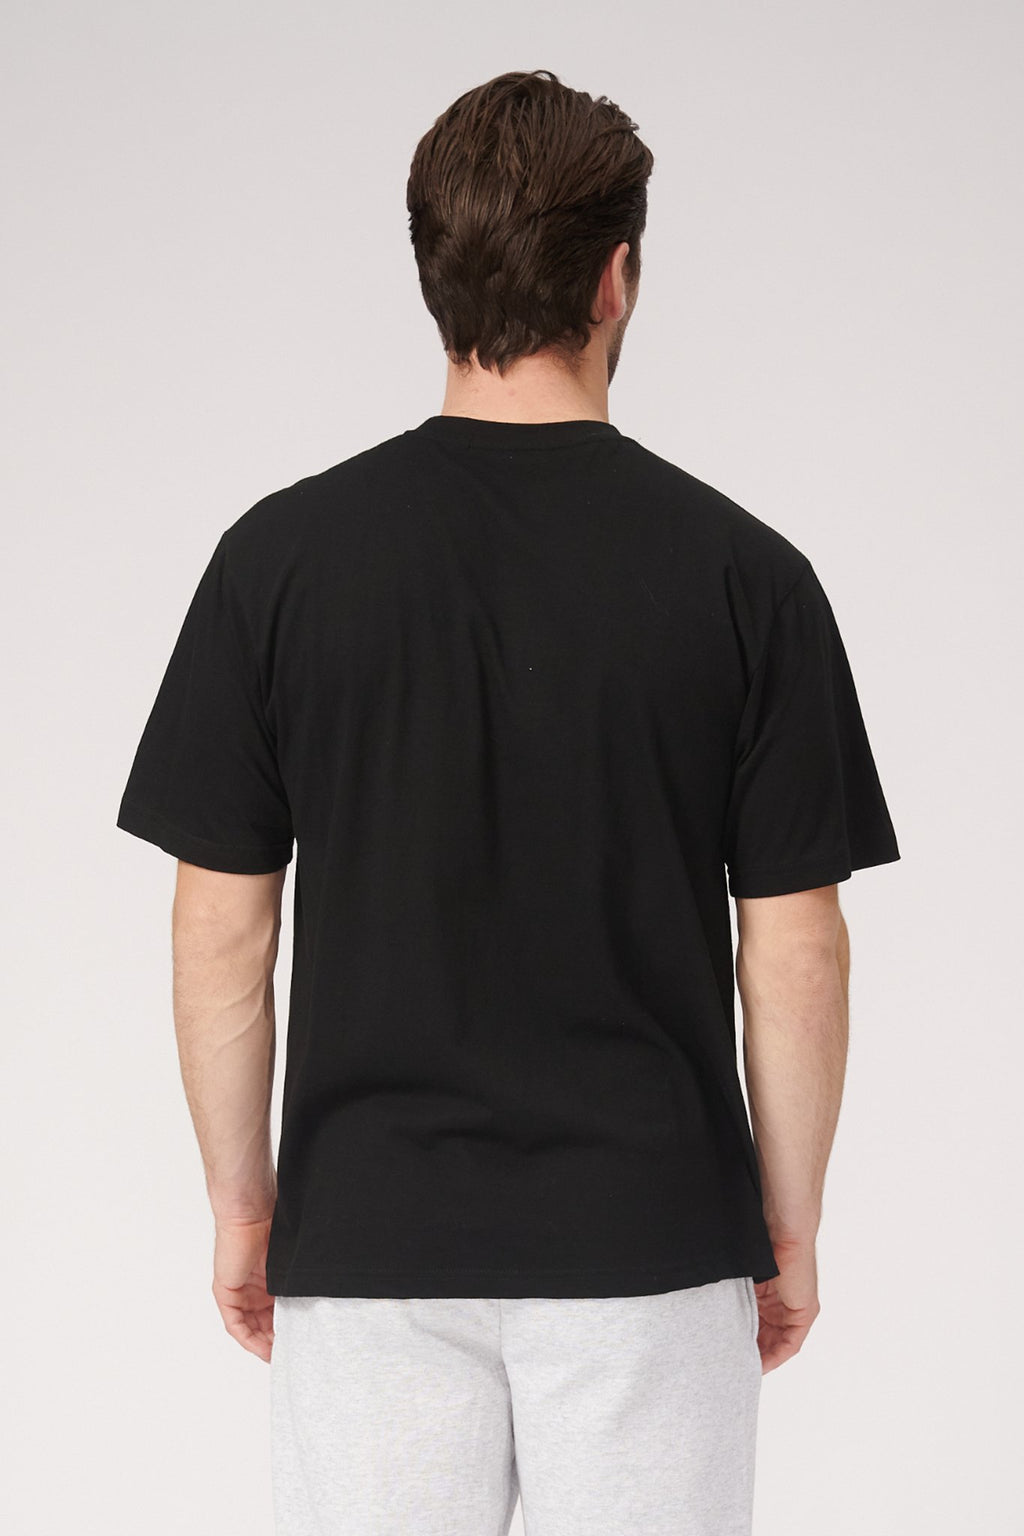 Negabaritiniai marškinėliai - juodi